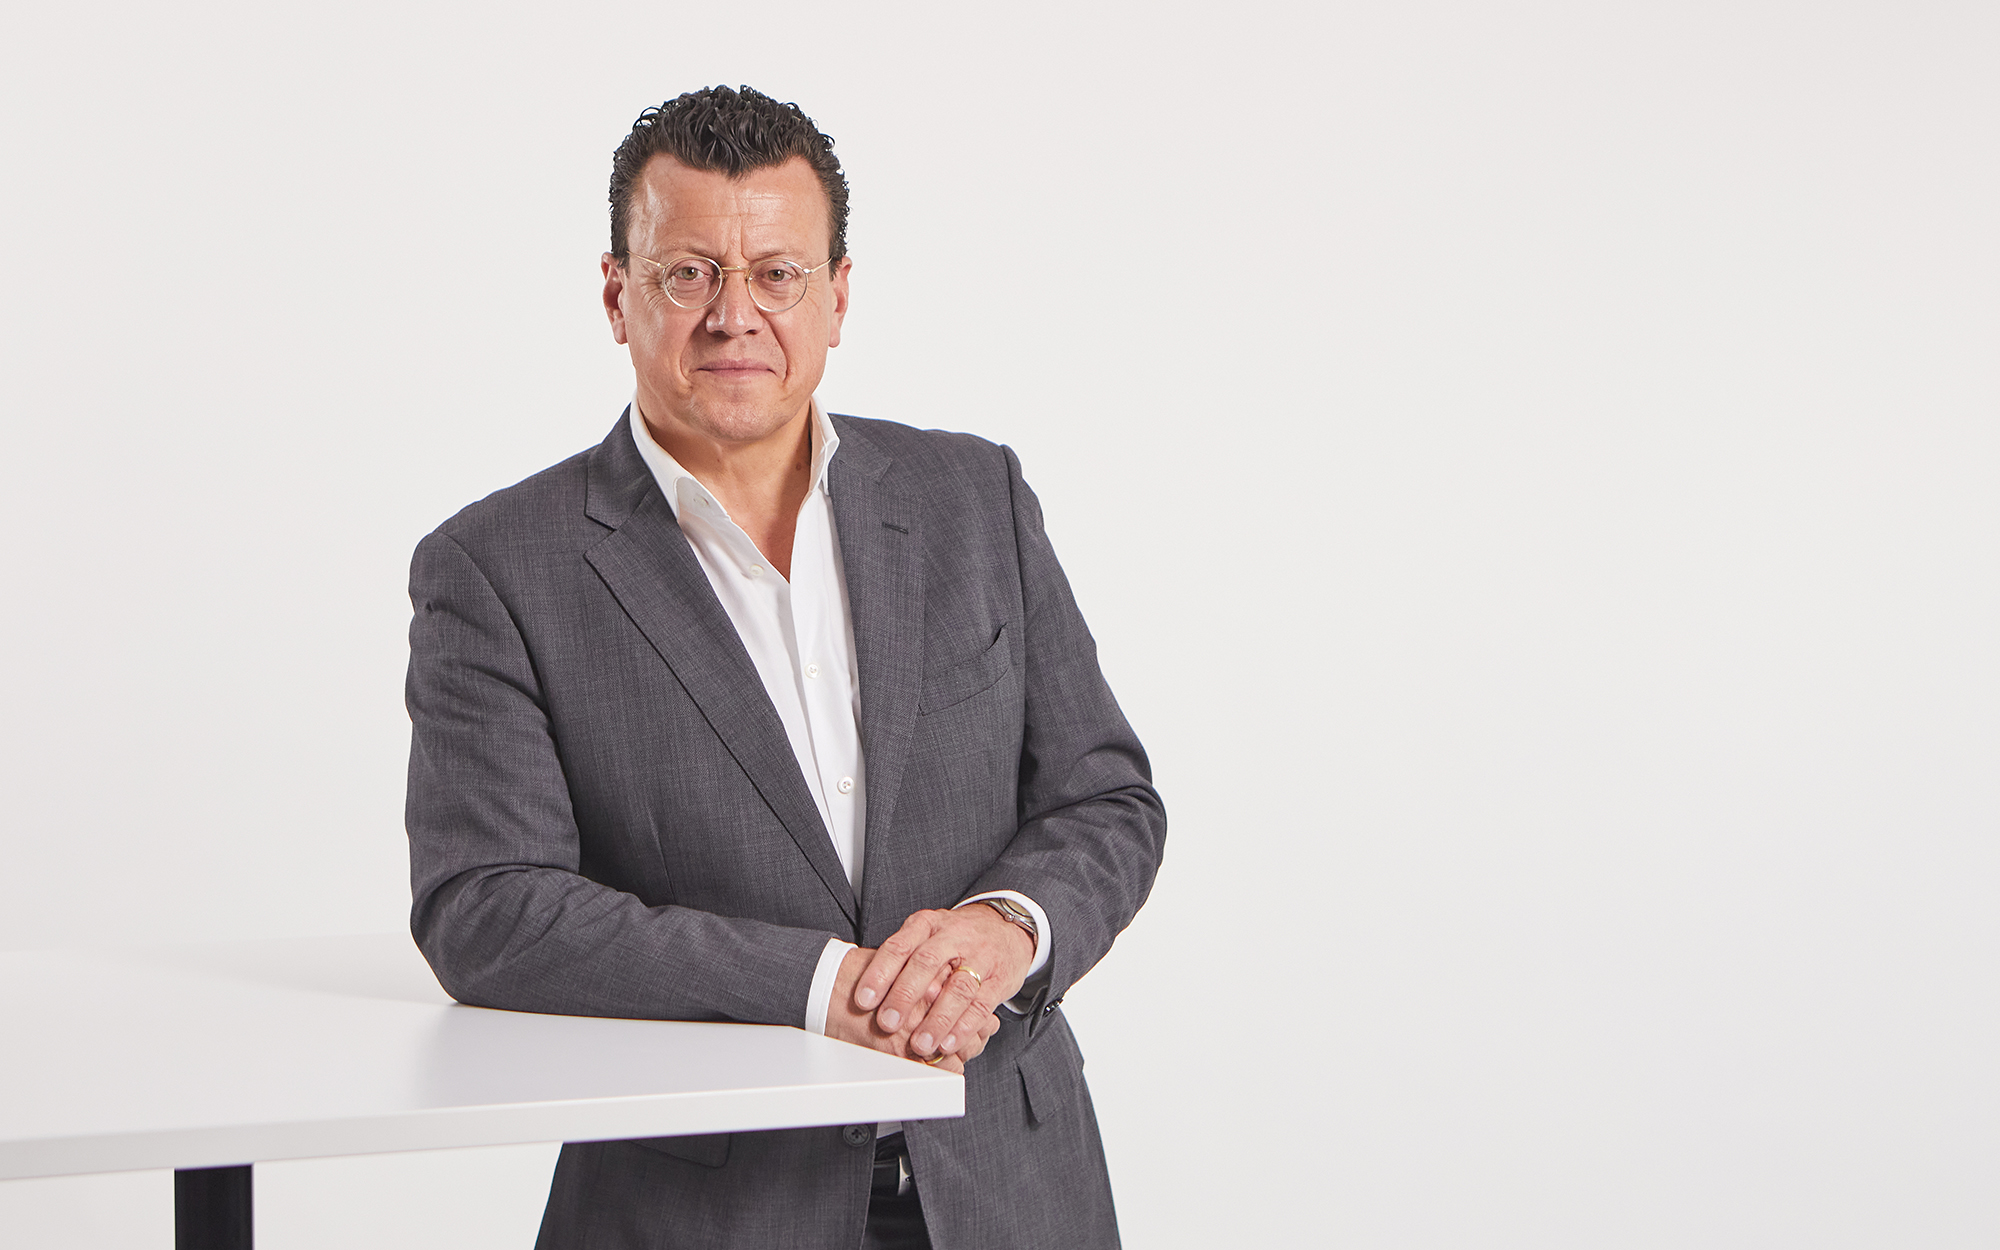 Dr. Steven Althaus leitet seit 2020 als CEO die Geschäfte der Grenzebach Gruppe. 